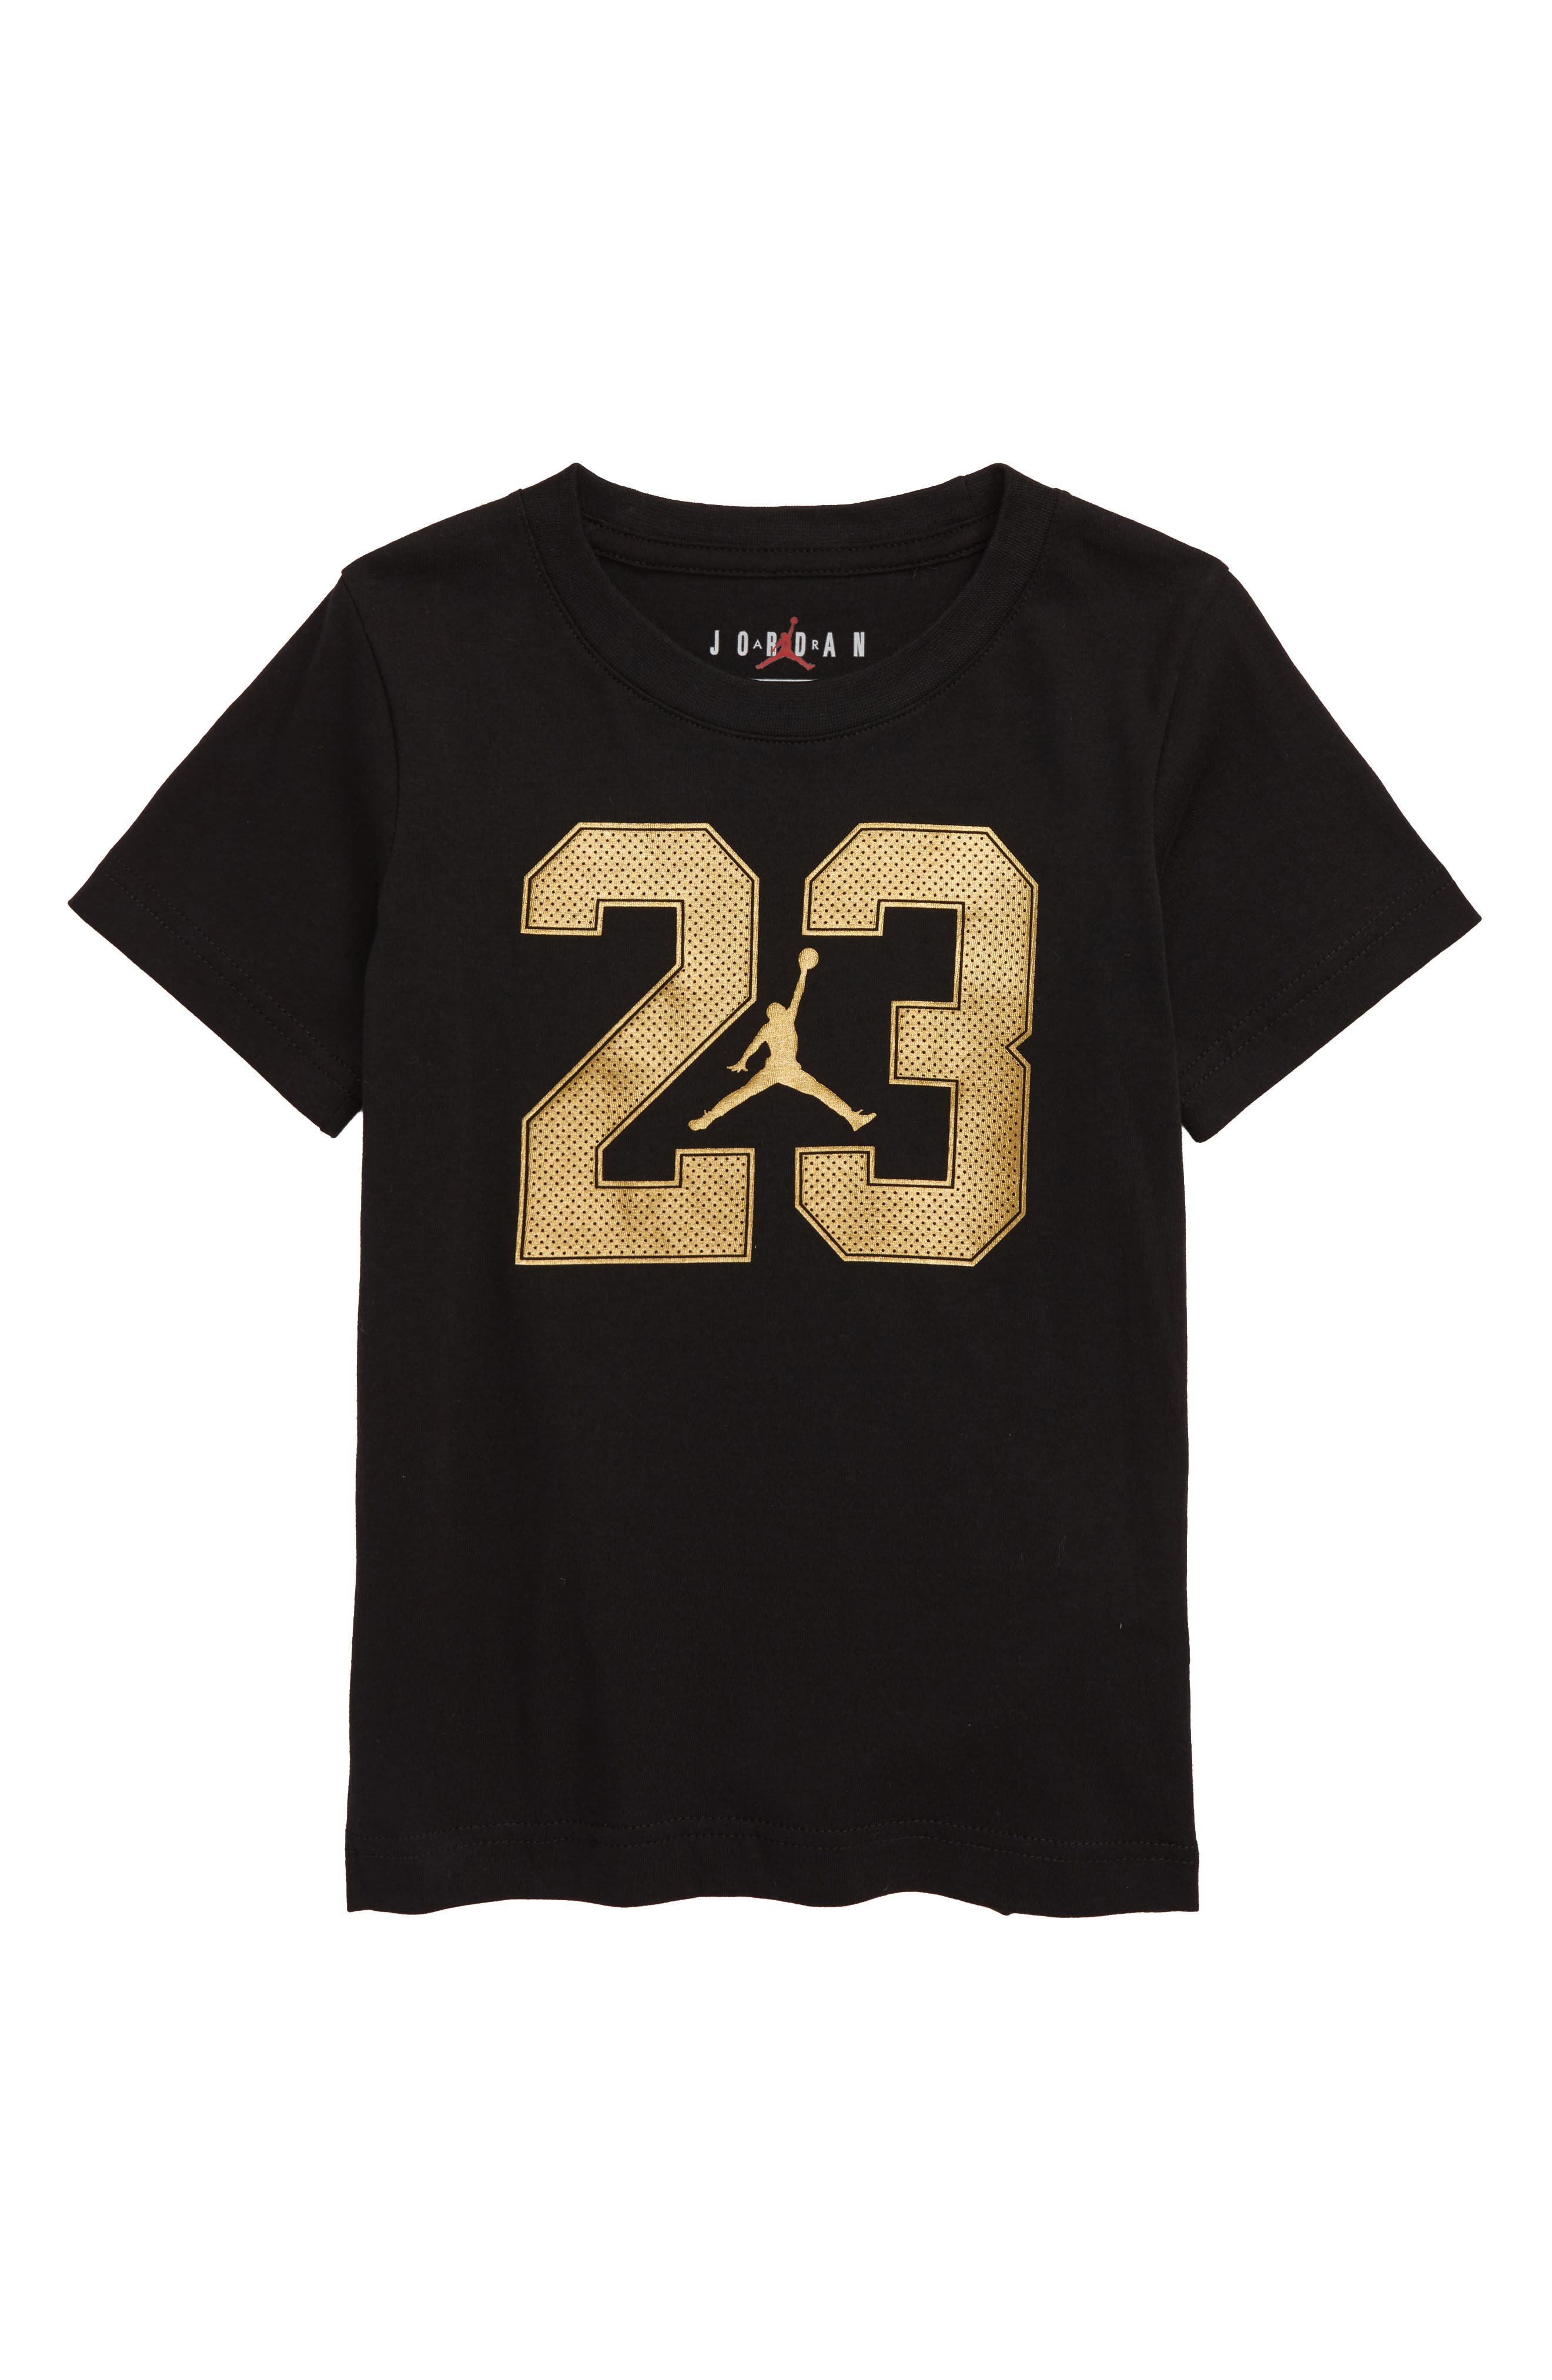 michael jordan t shirt 23